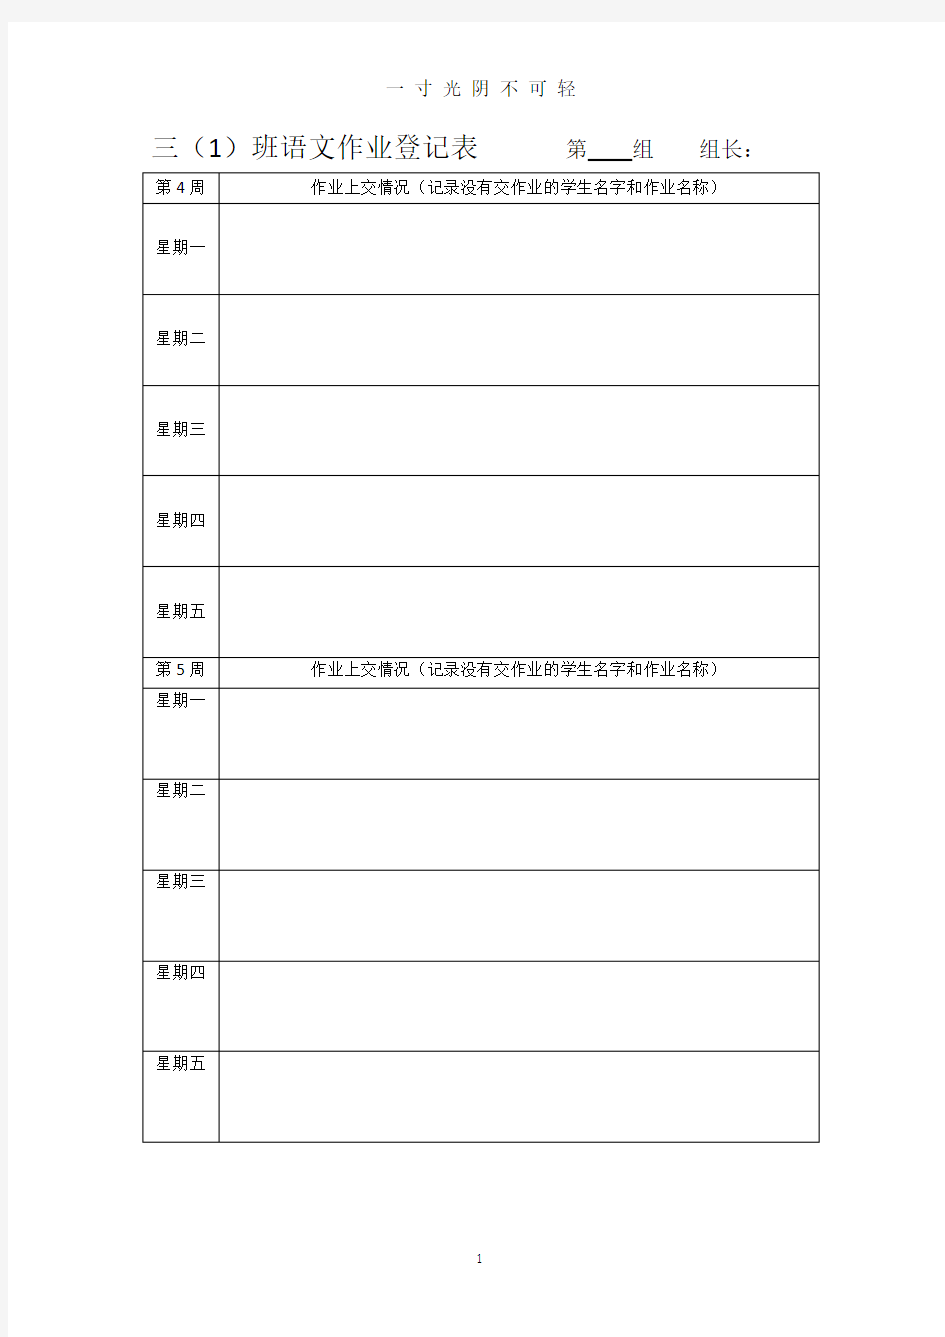 语文作业登记表.pdf